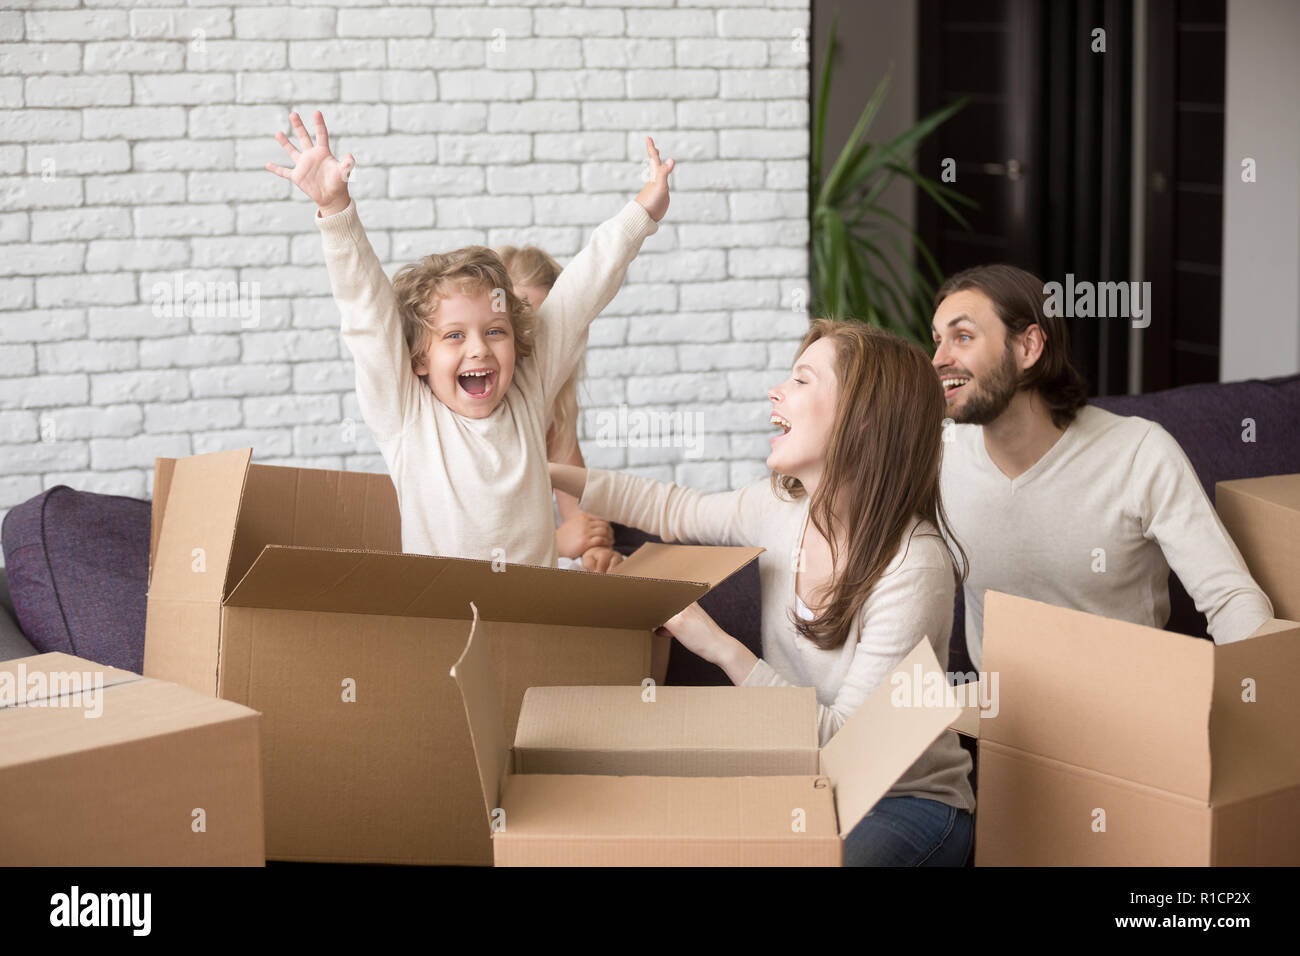 Famille heureuse avec boîtes de carton dans leur nouvelle maison Banque D'Images